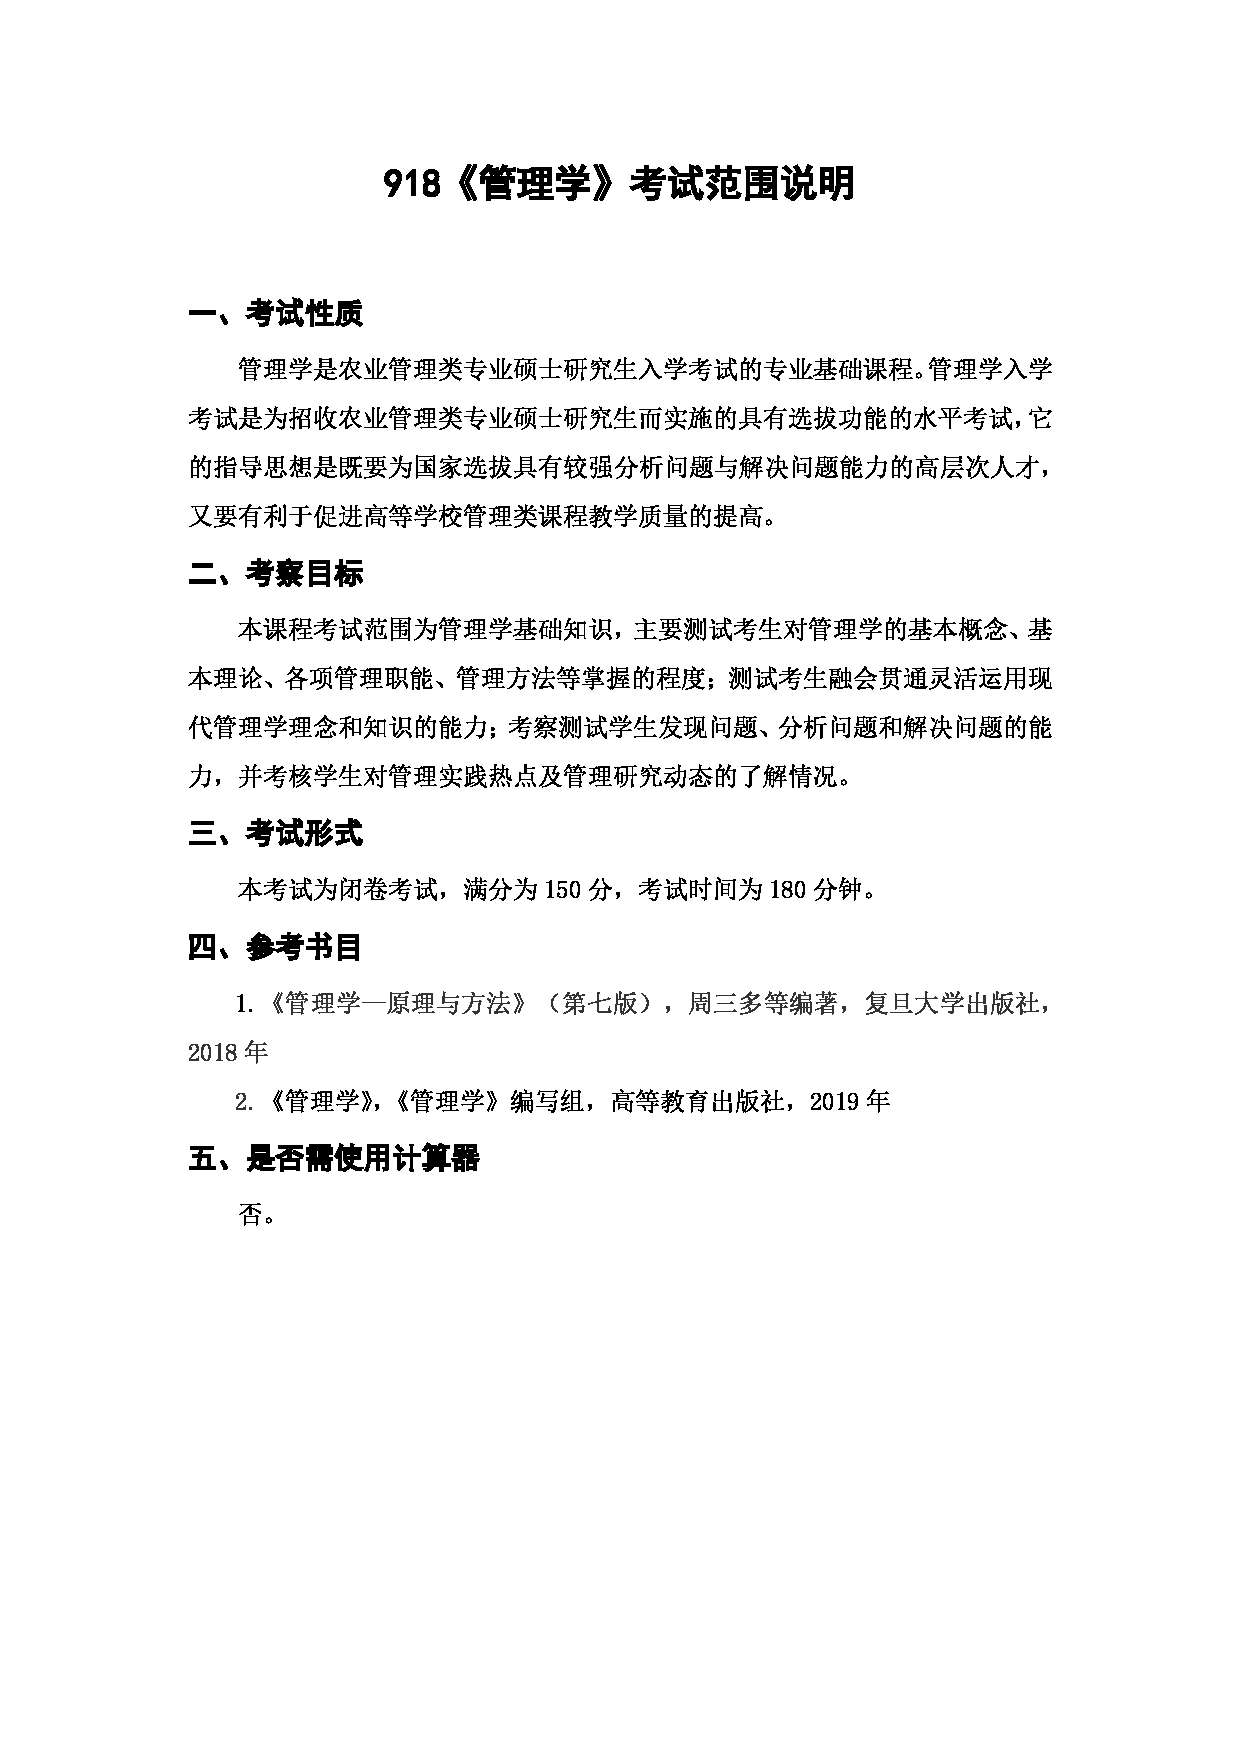 上海海洋大学2023年考研自命题科目 918《管理学》 考试范围第1页